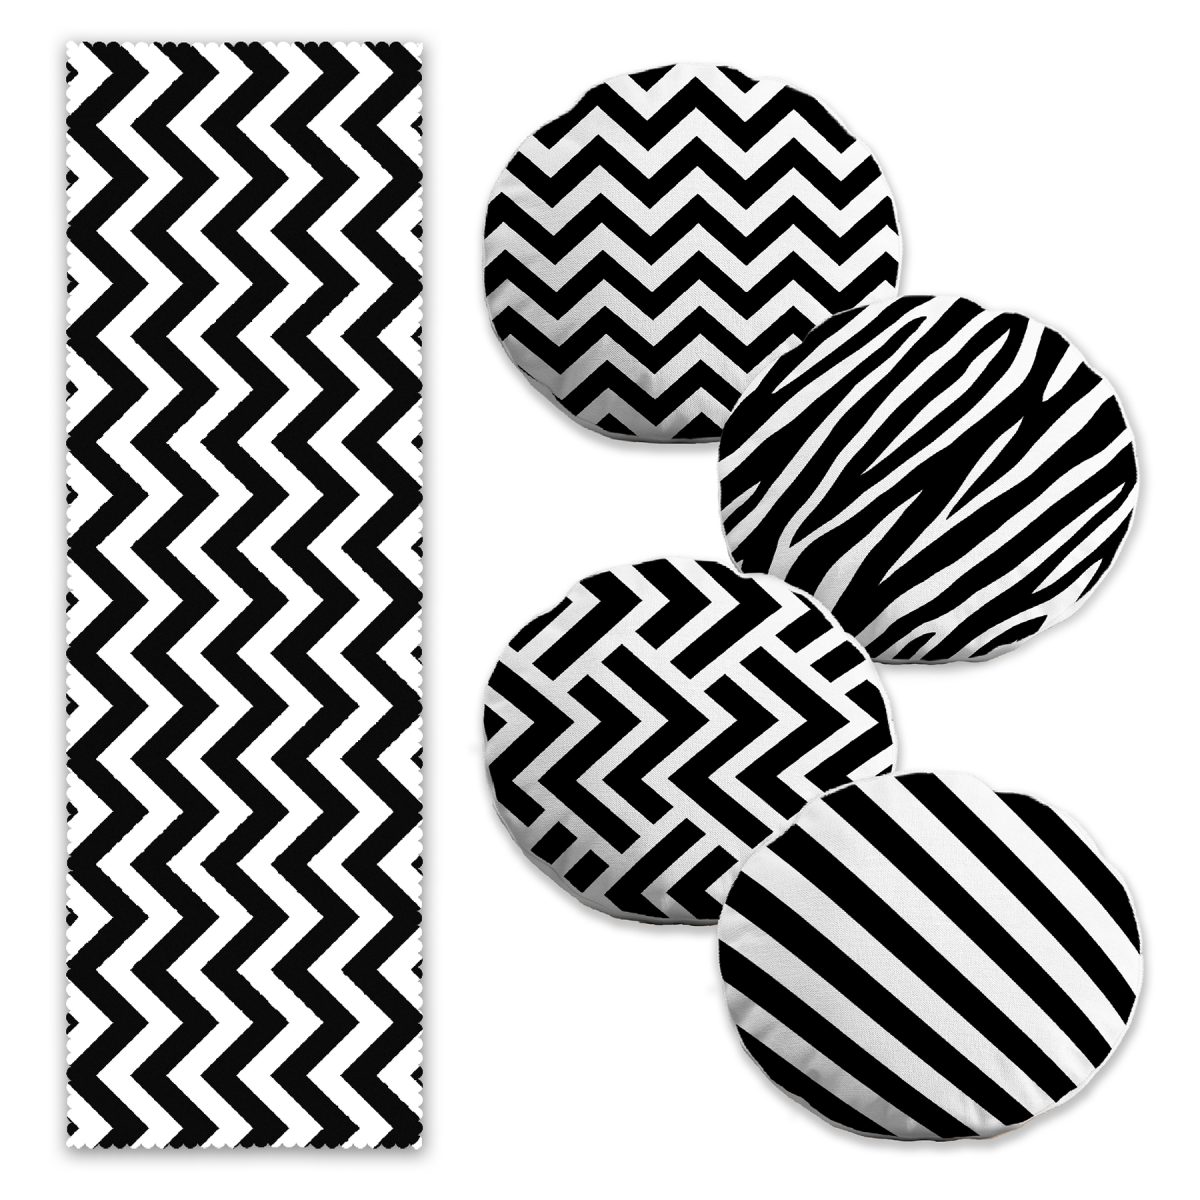 Siyah Beyaz Geometrik Tasarımlı 4 Yuvarlak Kırlent Kılıfı ve 1 Runner Seti Realhomes